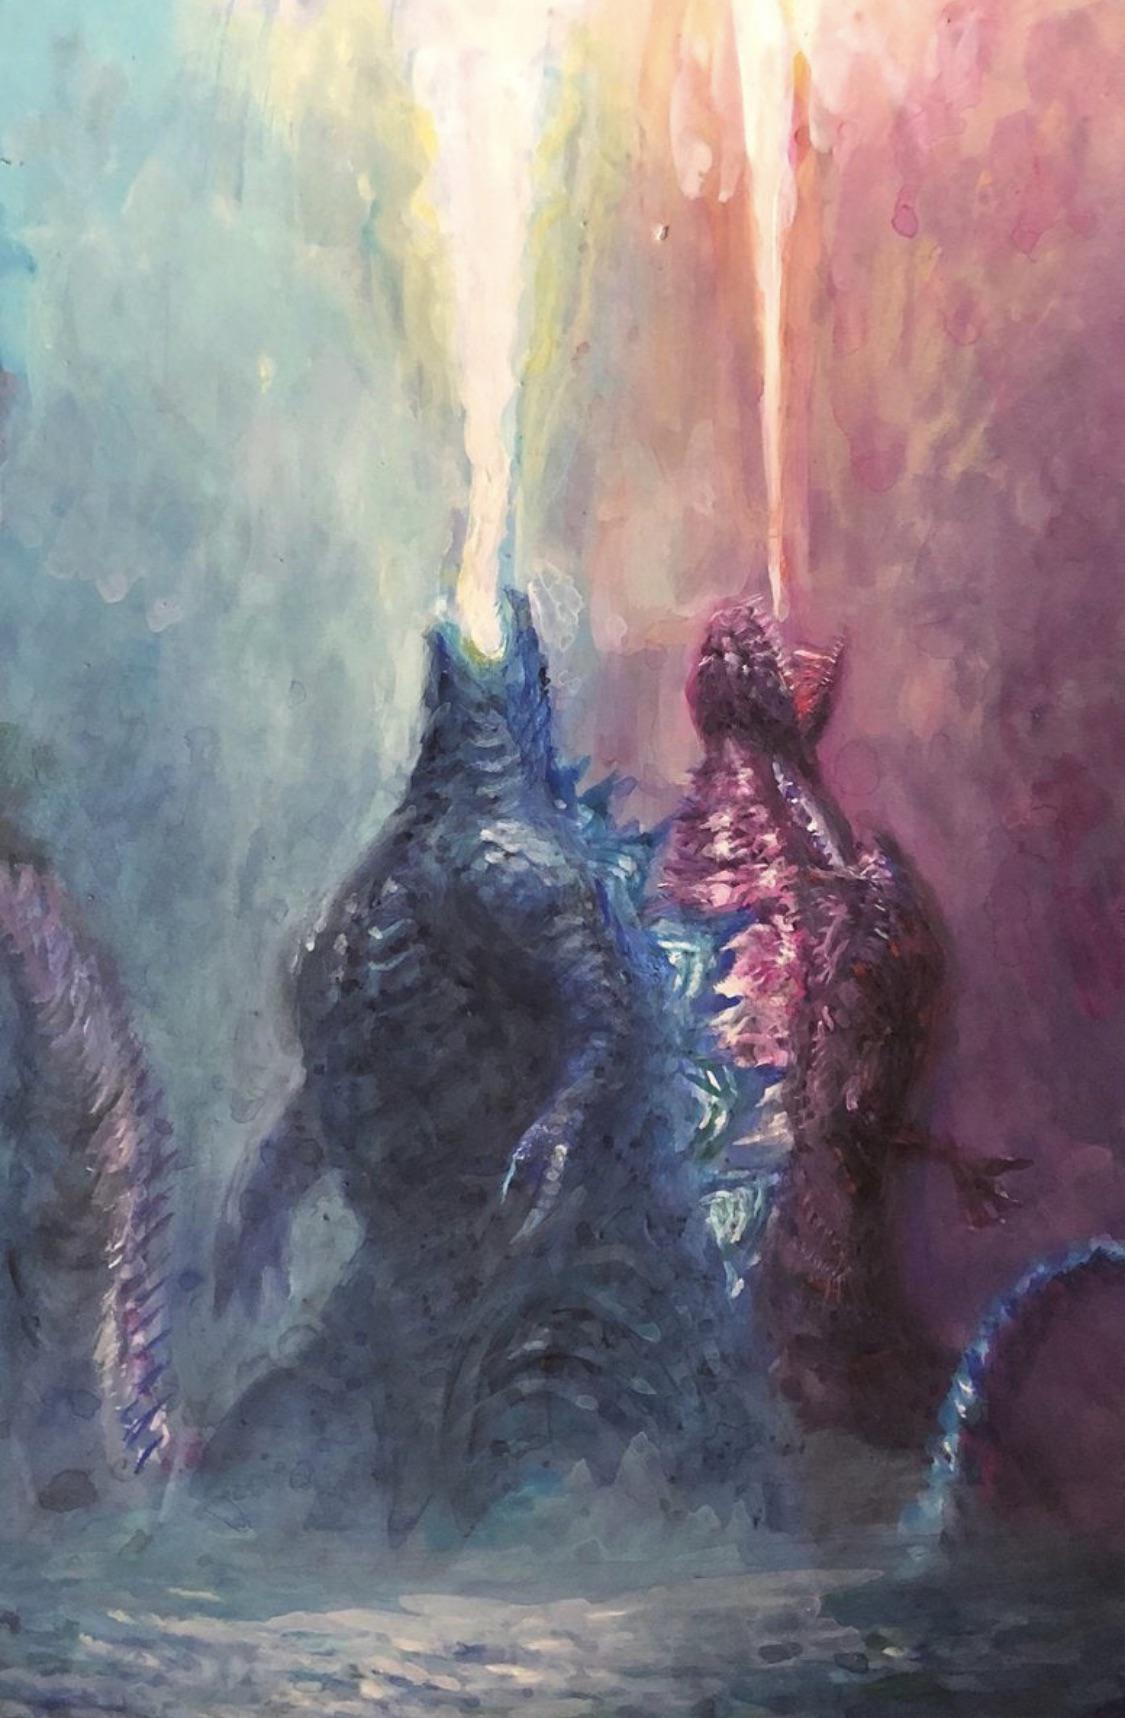 Shin Godzilla Wallpaper by godzillaimage on DeviantArt